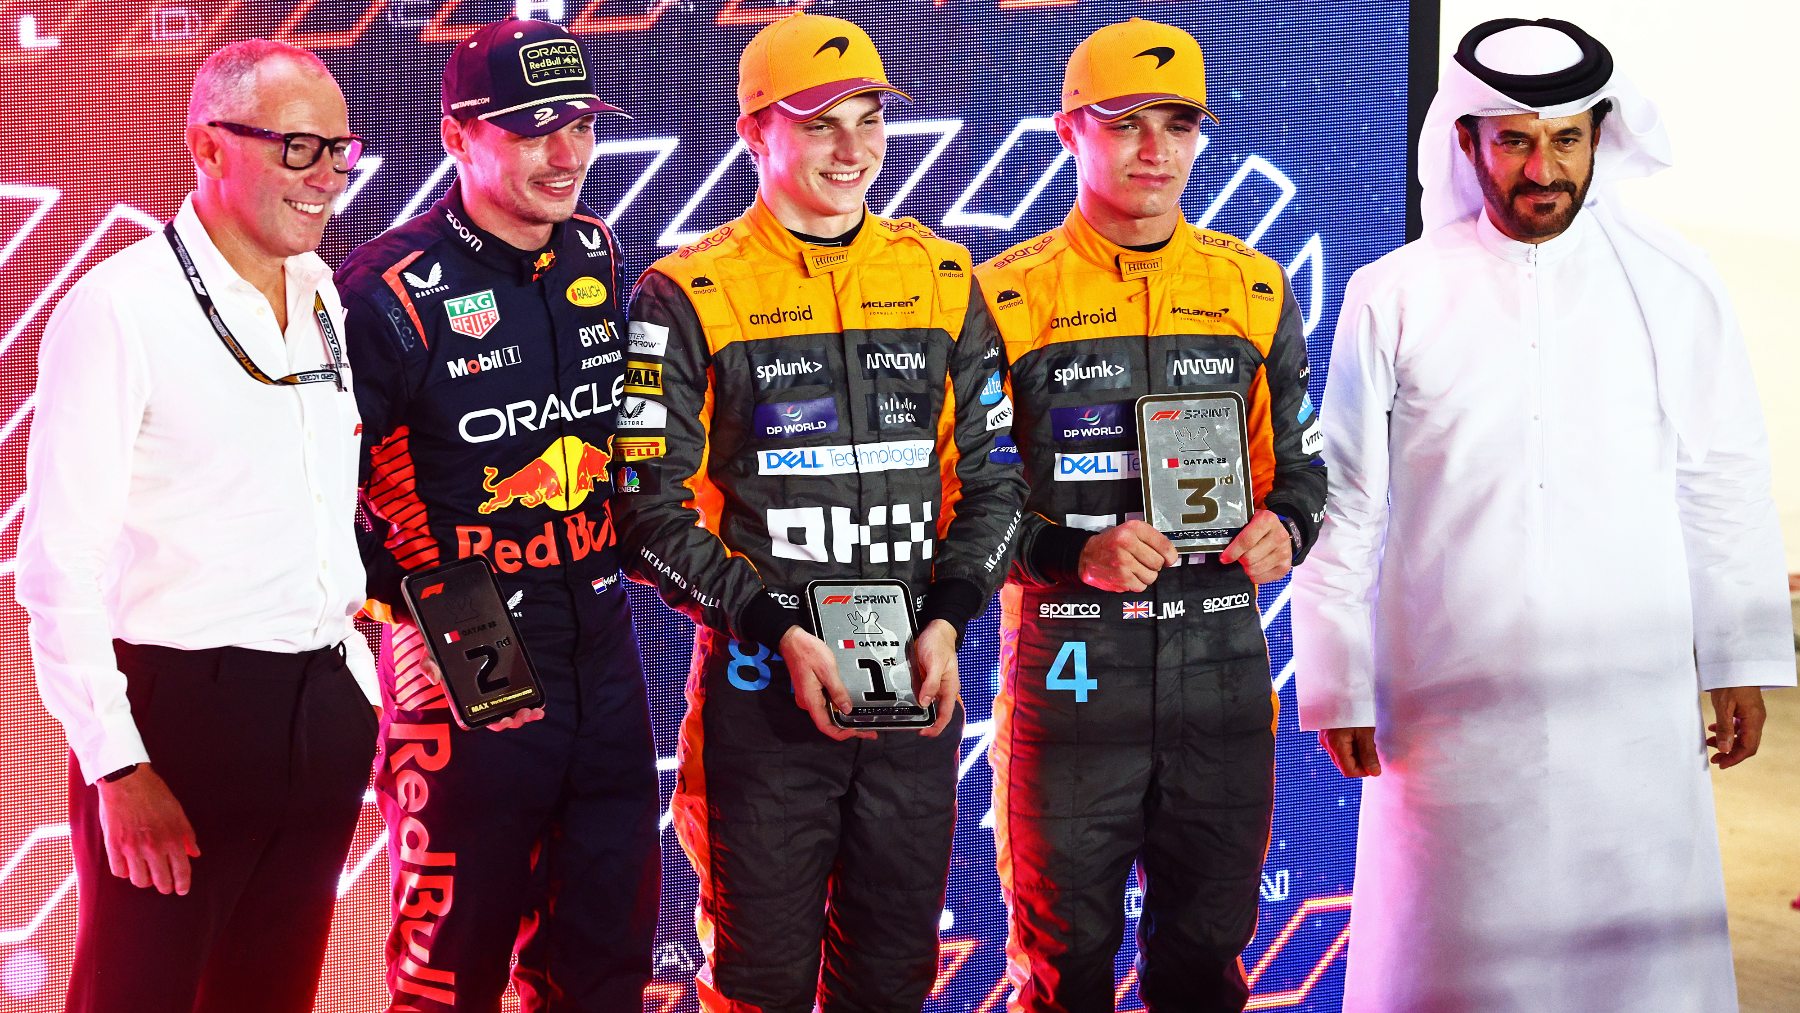 Los presidentes de la FIA y Fórmula 1 posan junto a los tres primeros clasificados en Qatar. (Getty)